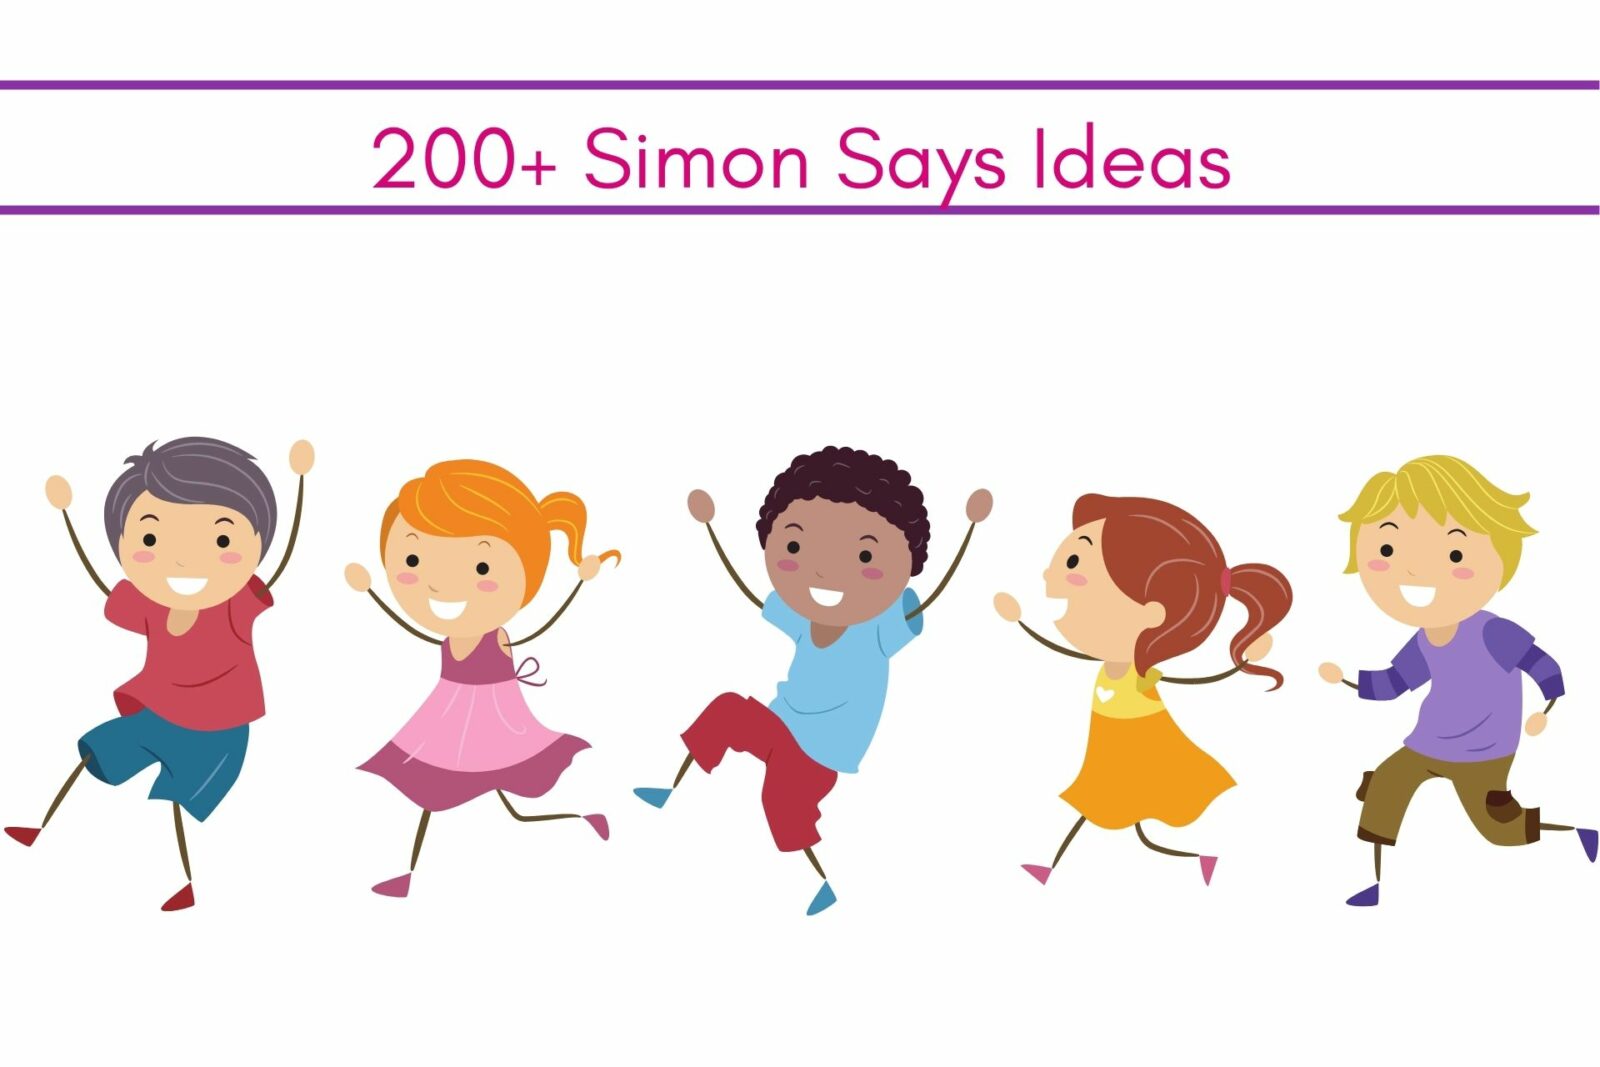 Simon says ideas